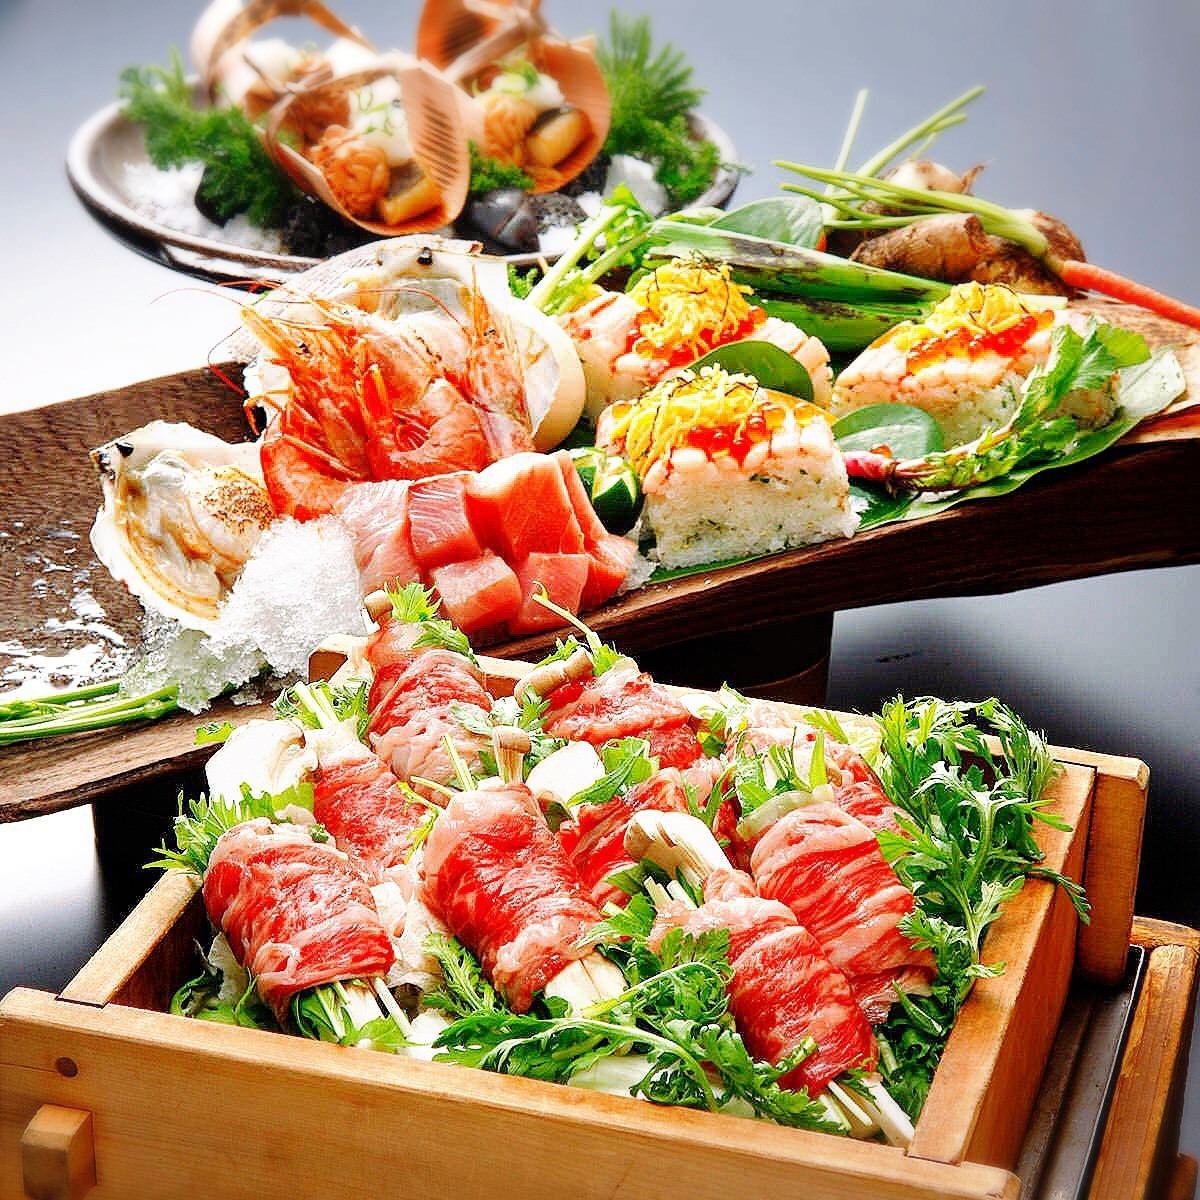 肉类寿司、烤鸡肉串、海鲜、内脏火锅等日本料理/3小时无限量吃喝 2,980日元